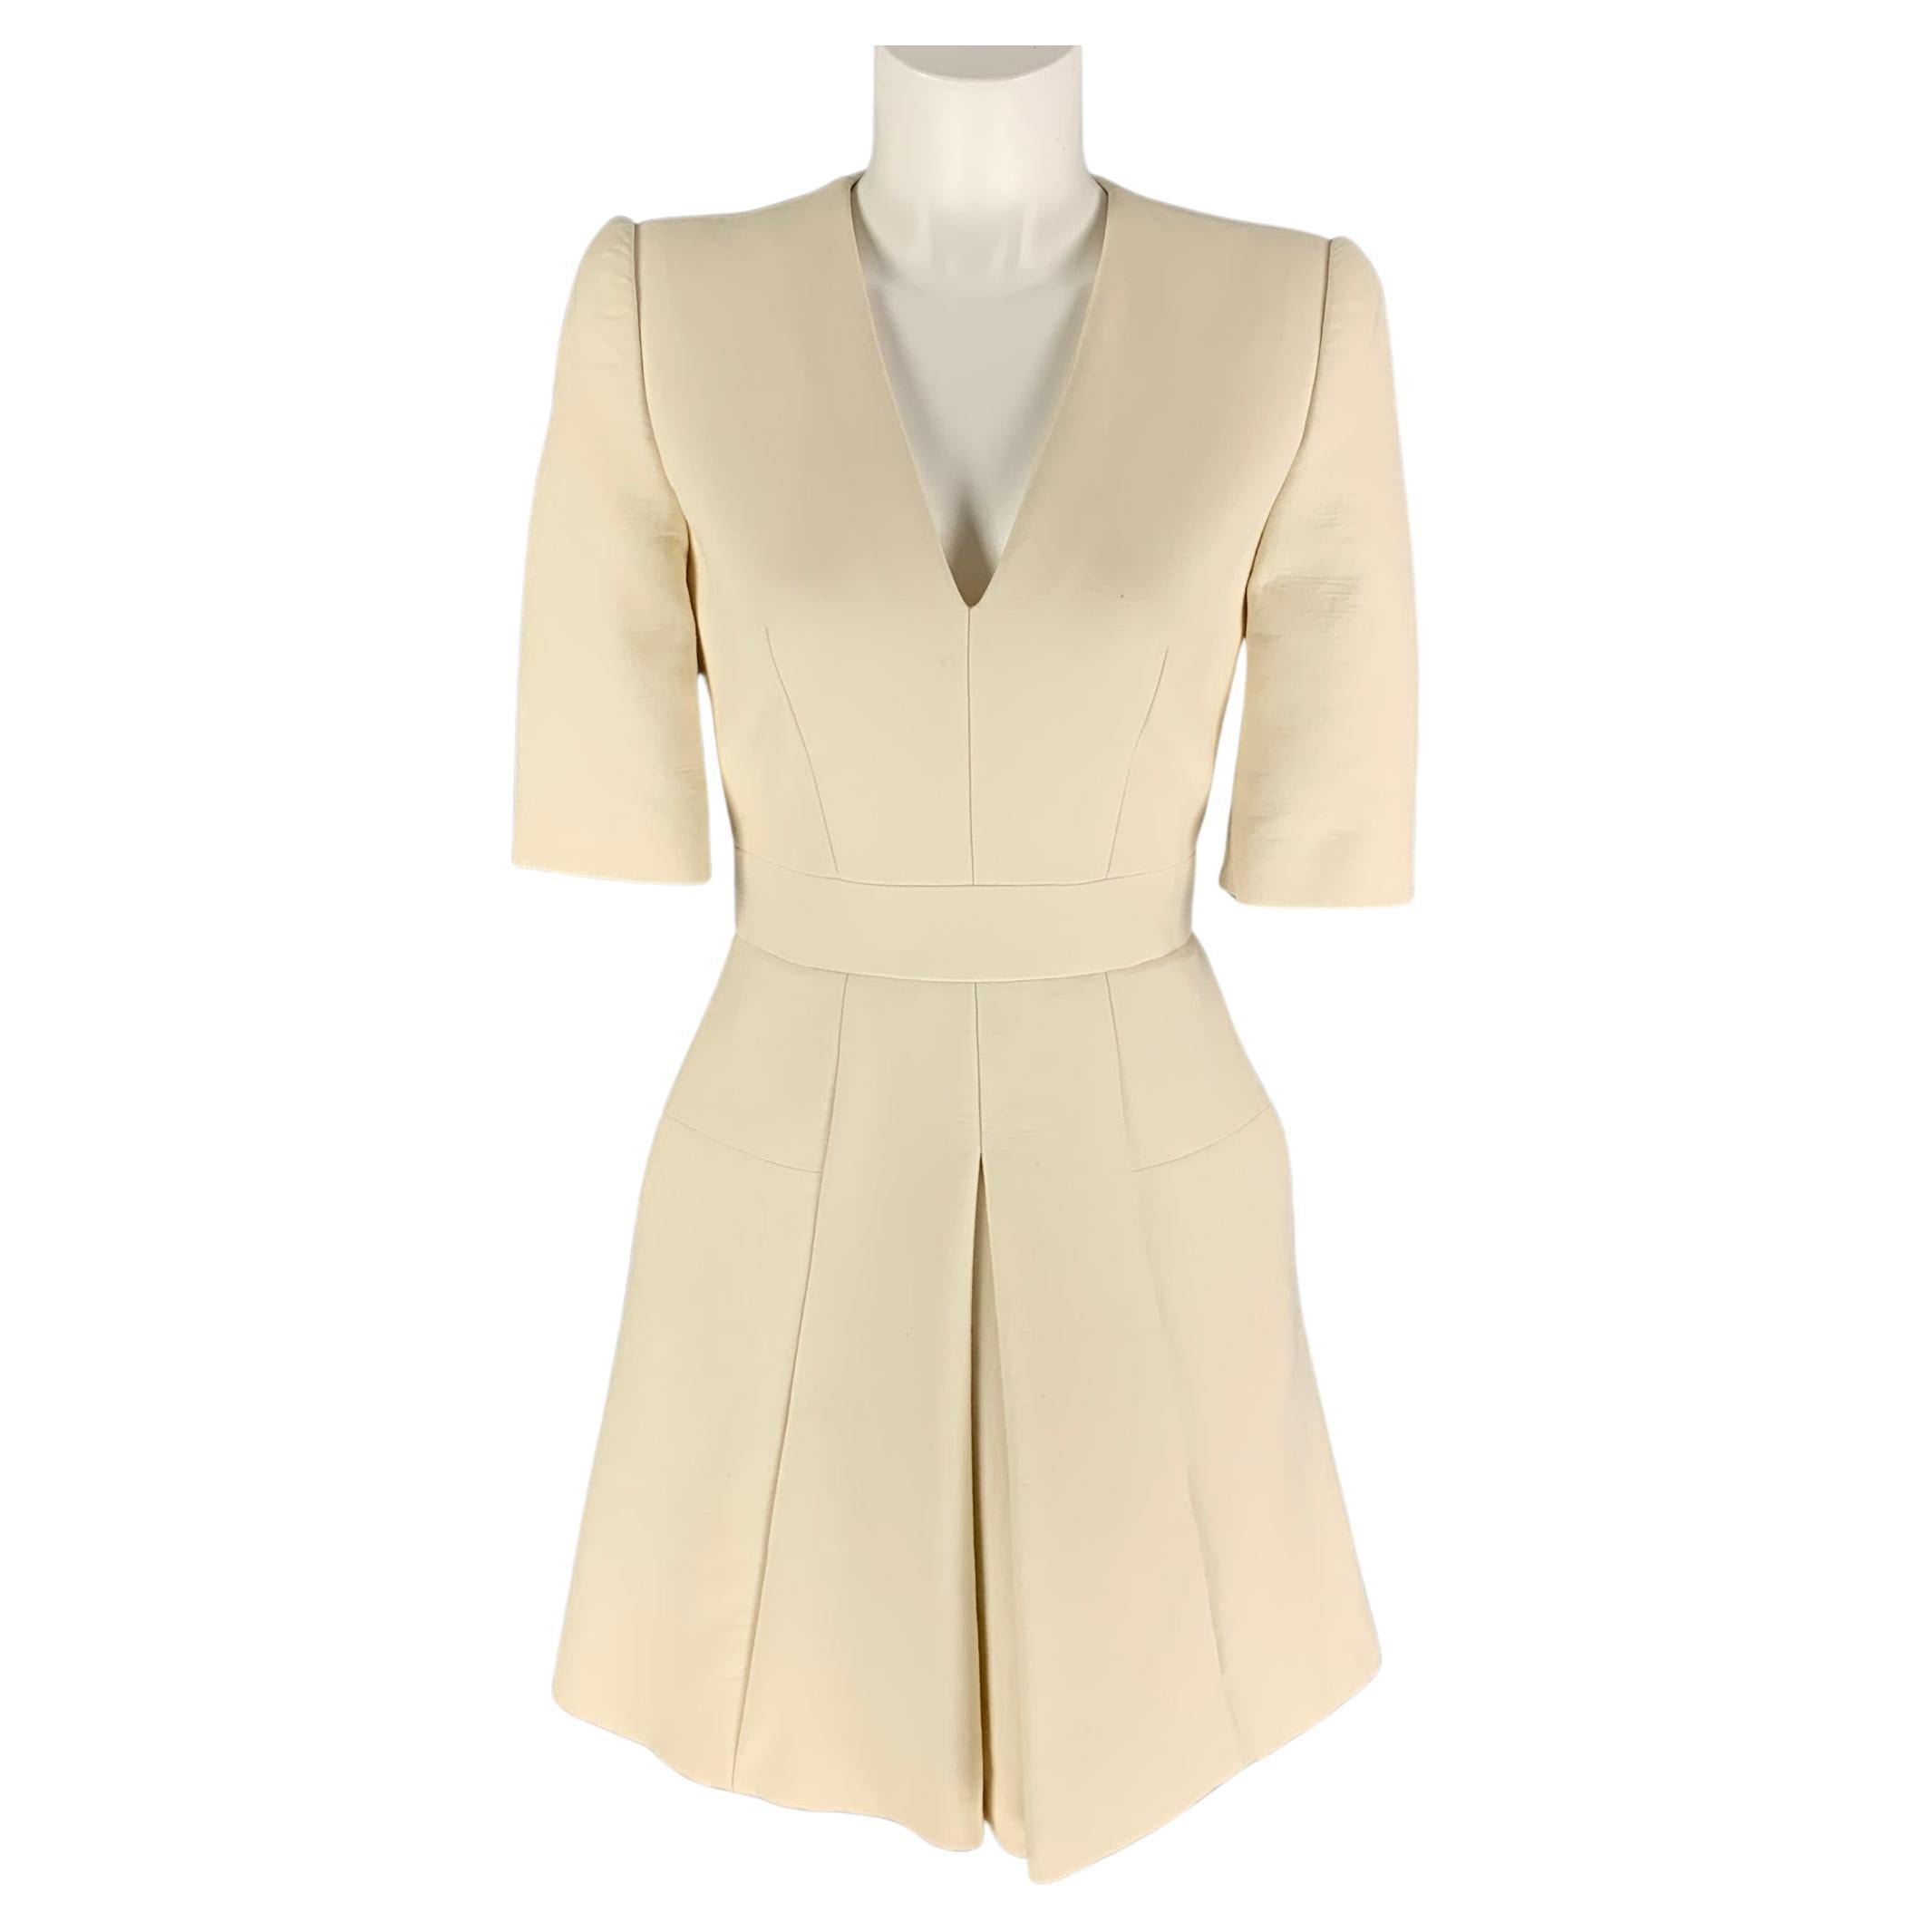 ALEXANDER MCQUEEN Size 4 Cream Wool Blend Textured Short Sleeve Dress